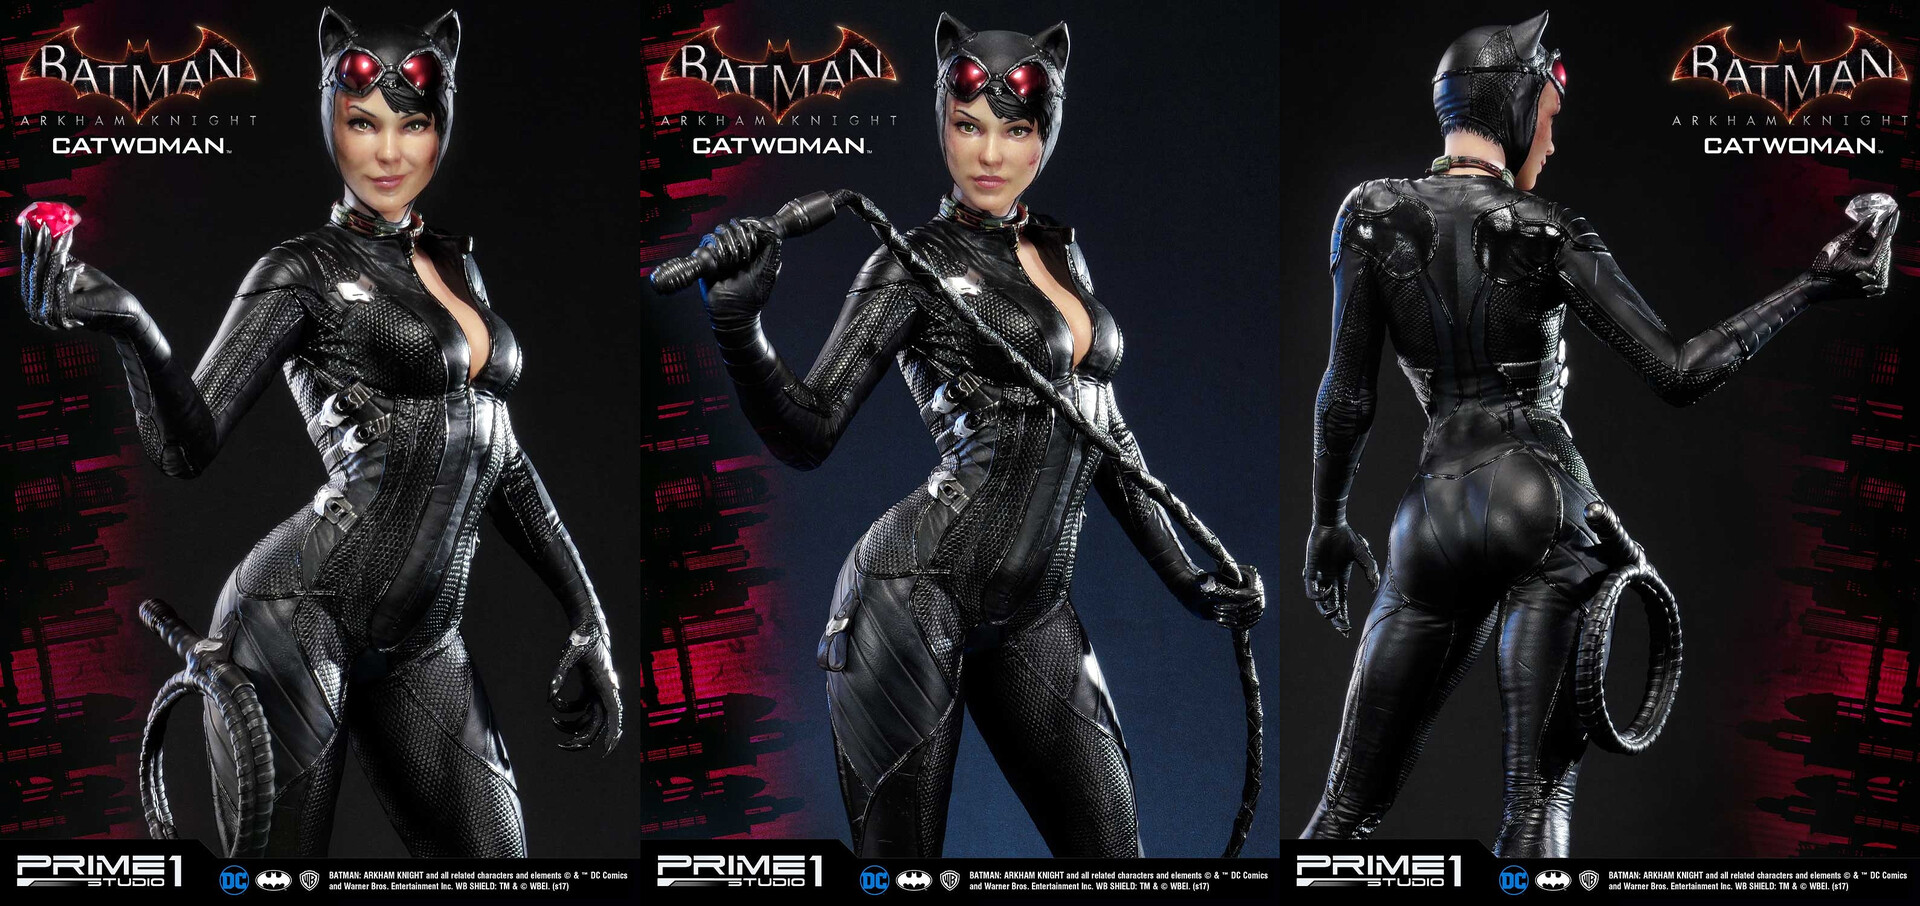 Steferson Rocha - Catwoman Arkham Knight – Prime 1 Studio